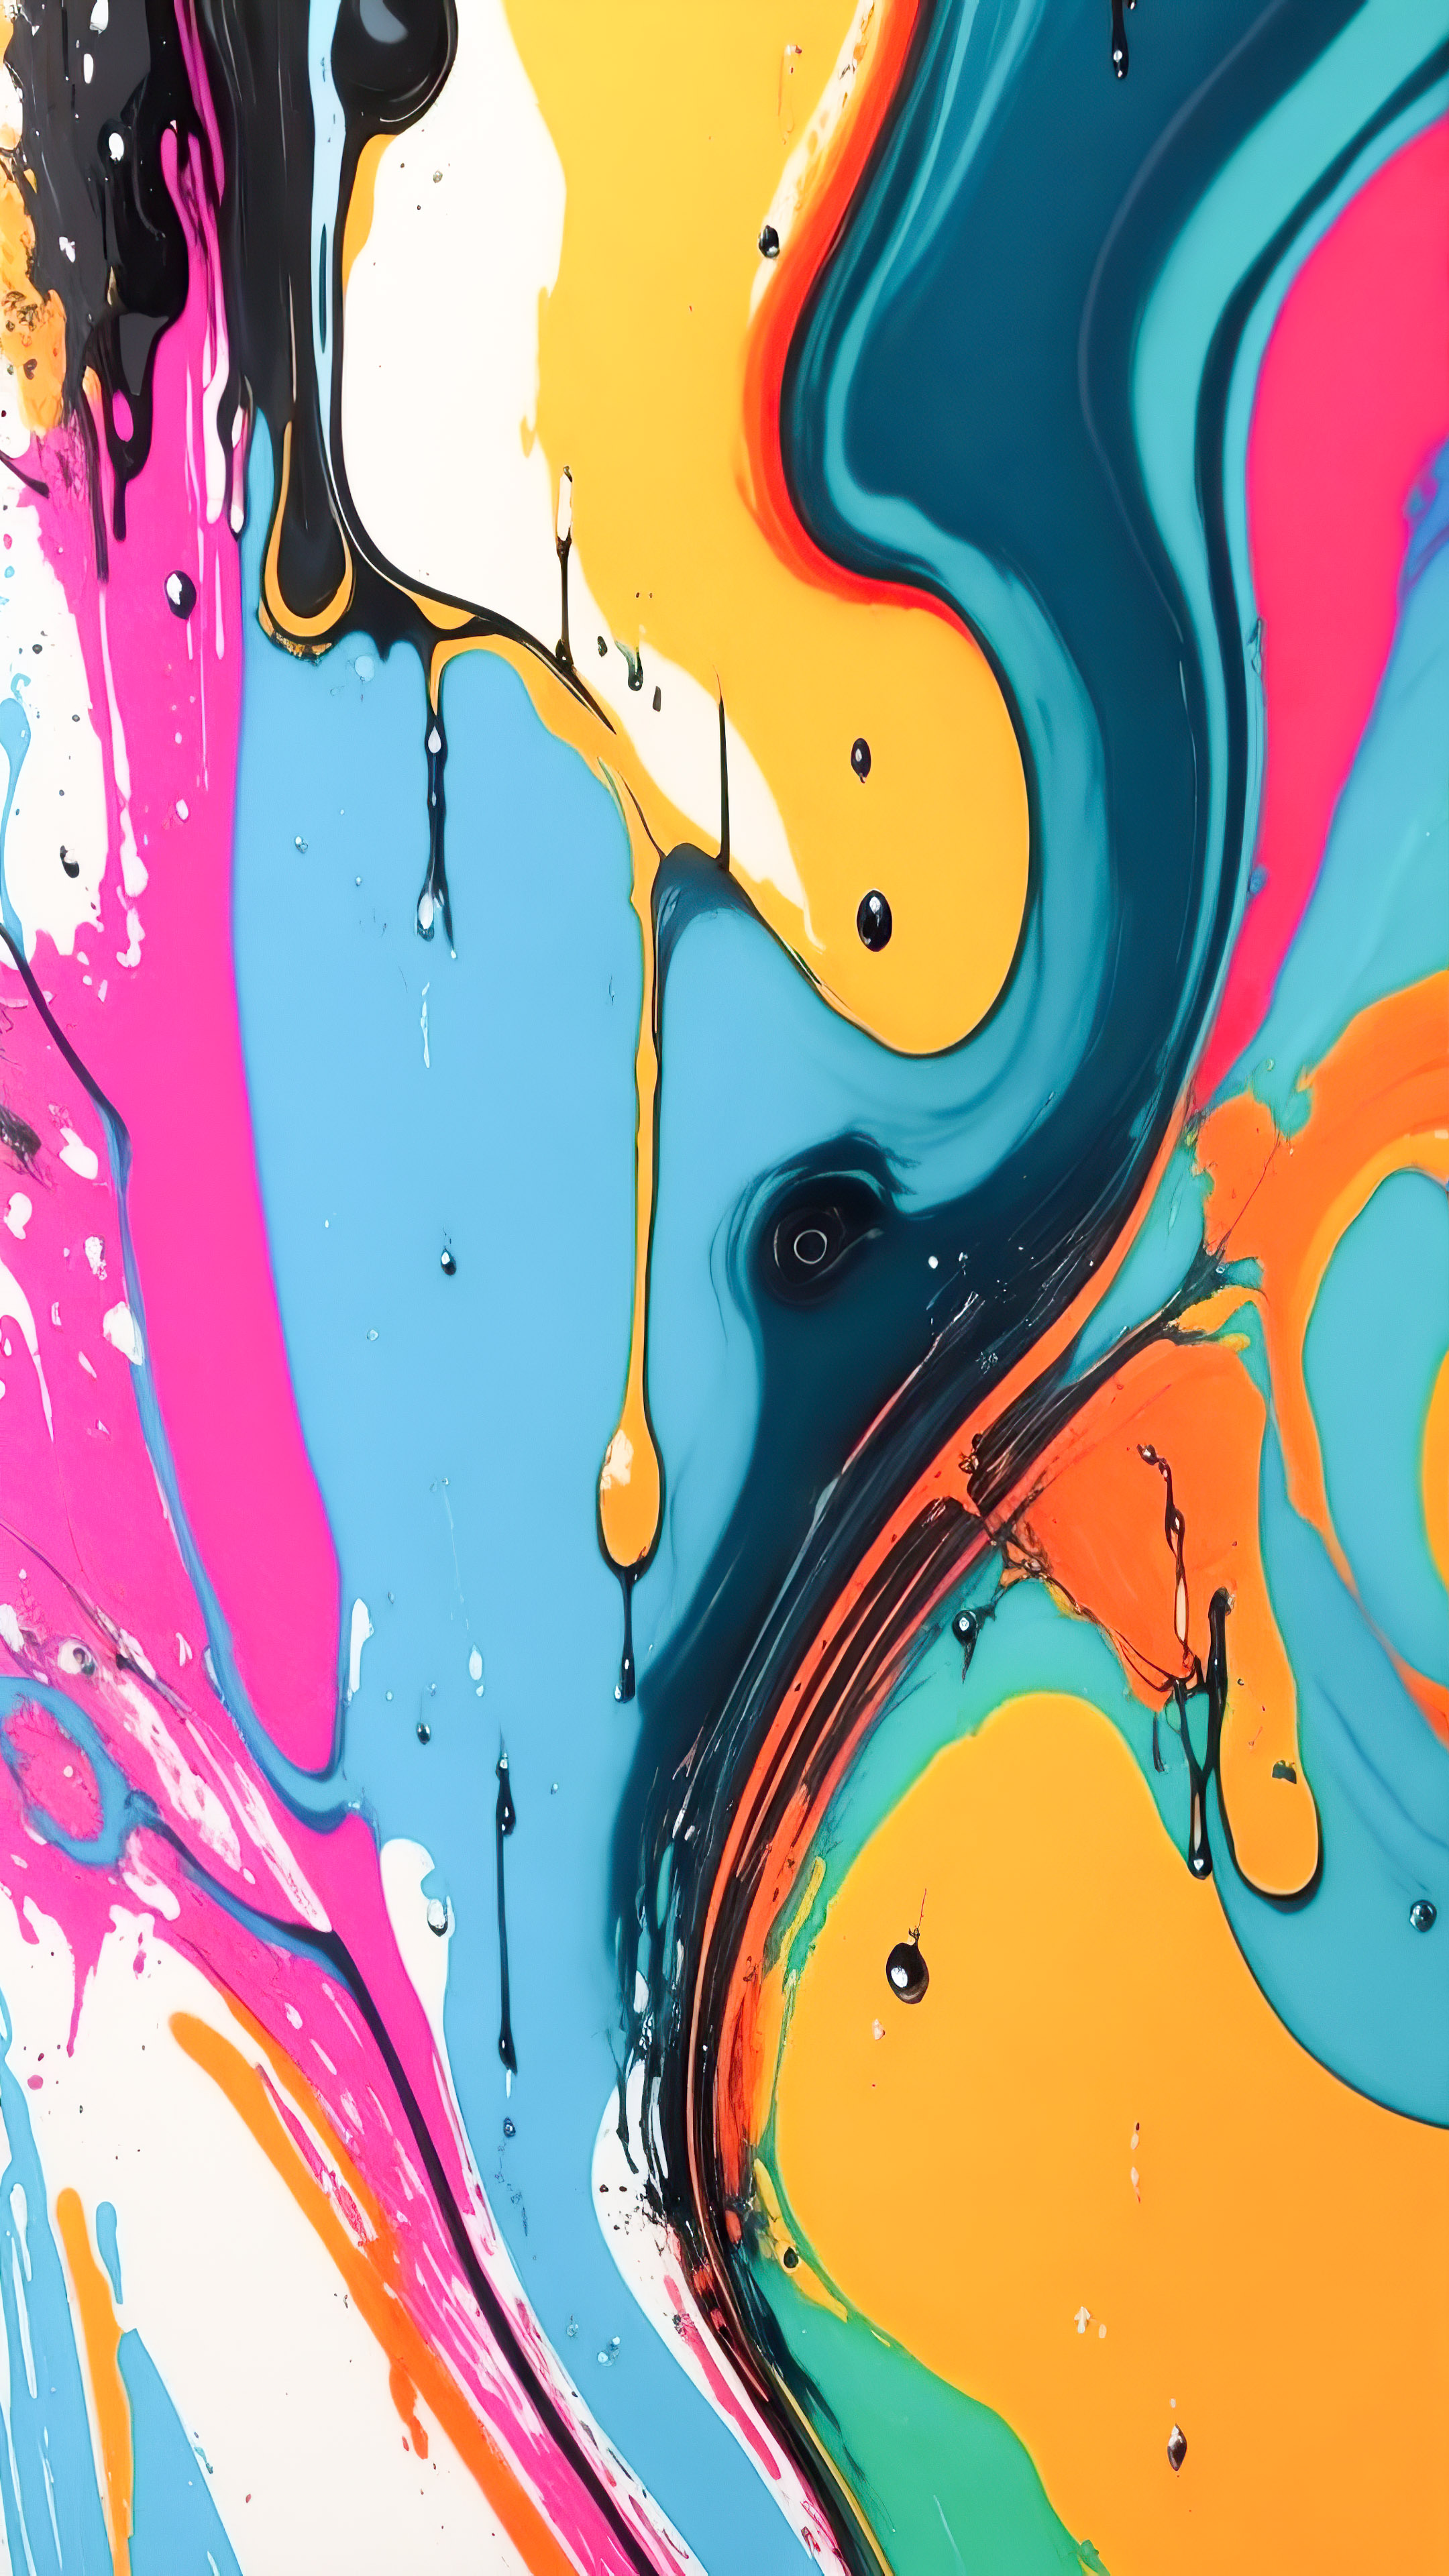 Immergez votre iPhone dans une explosion de couleur avec notre fond d'écran abstrait coloré, présentant des gouttes de peinture rythmiques et chaotiques sur une toile.